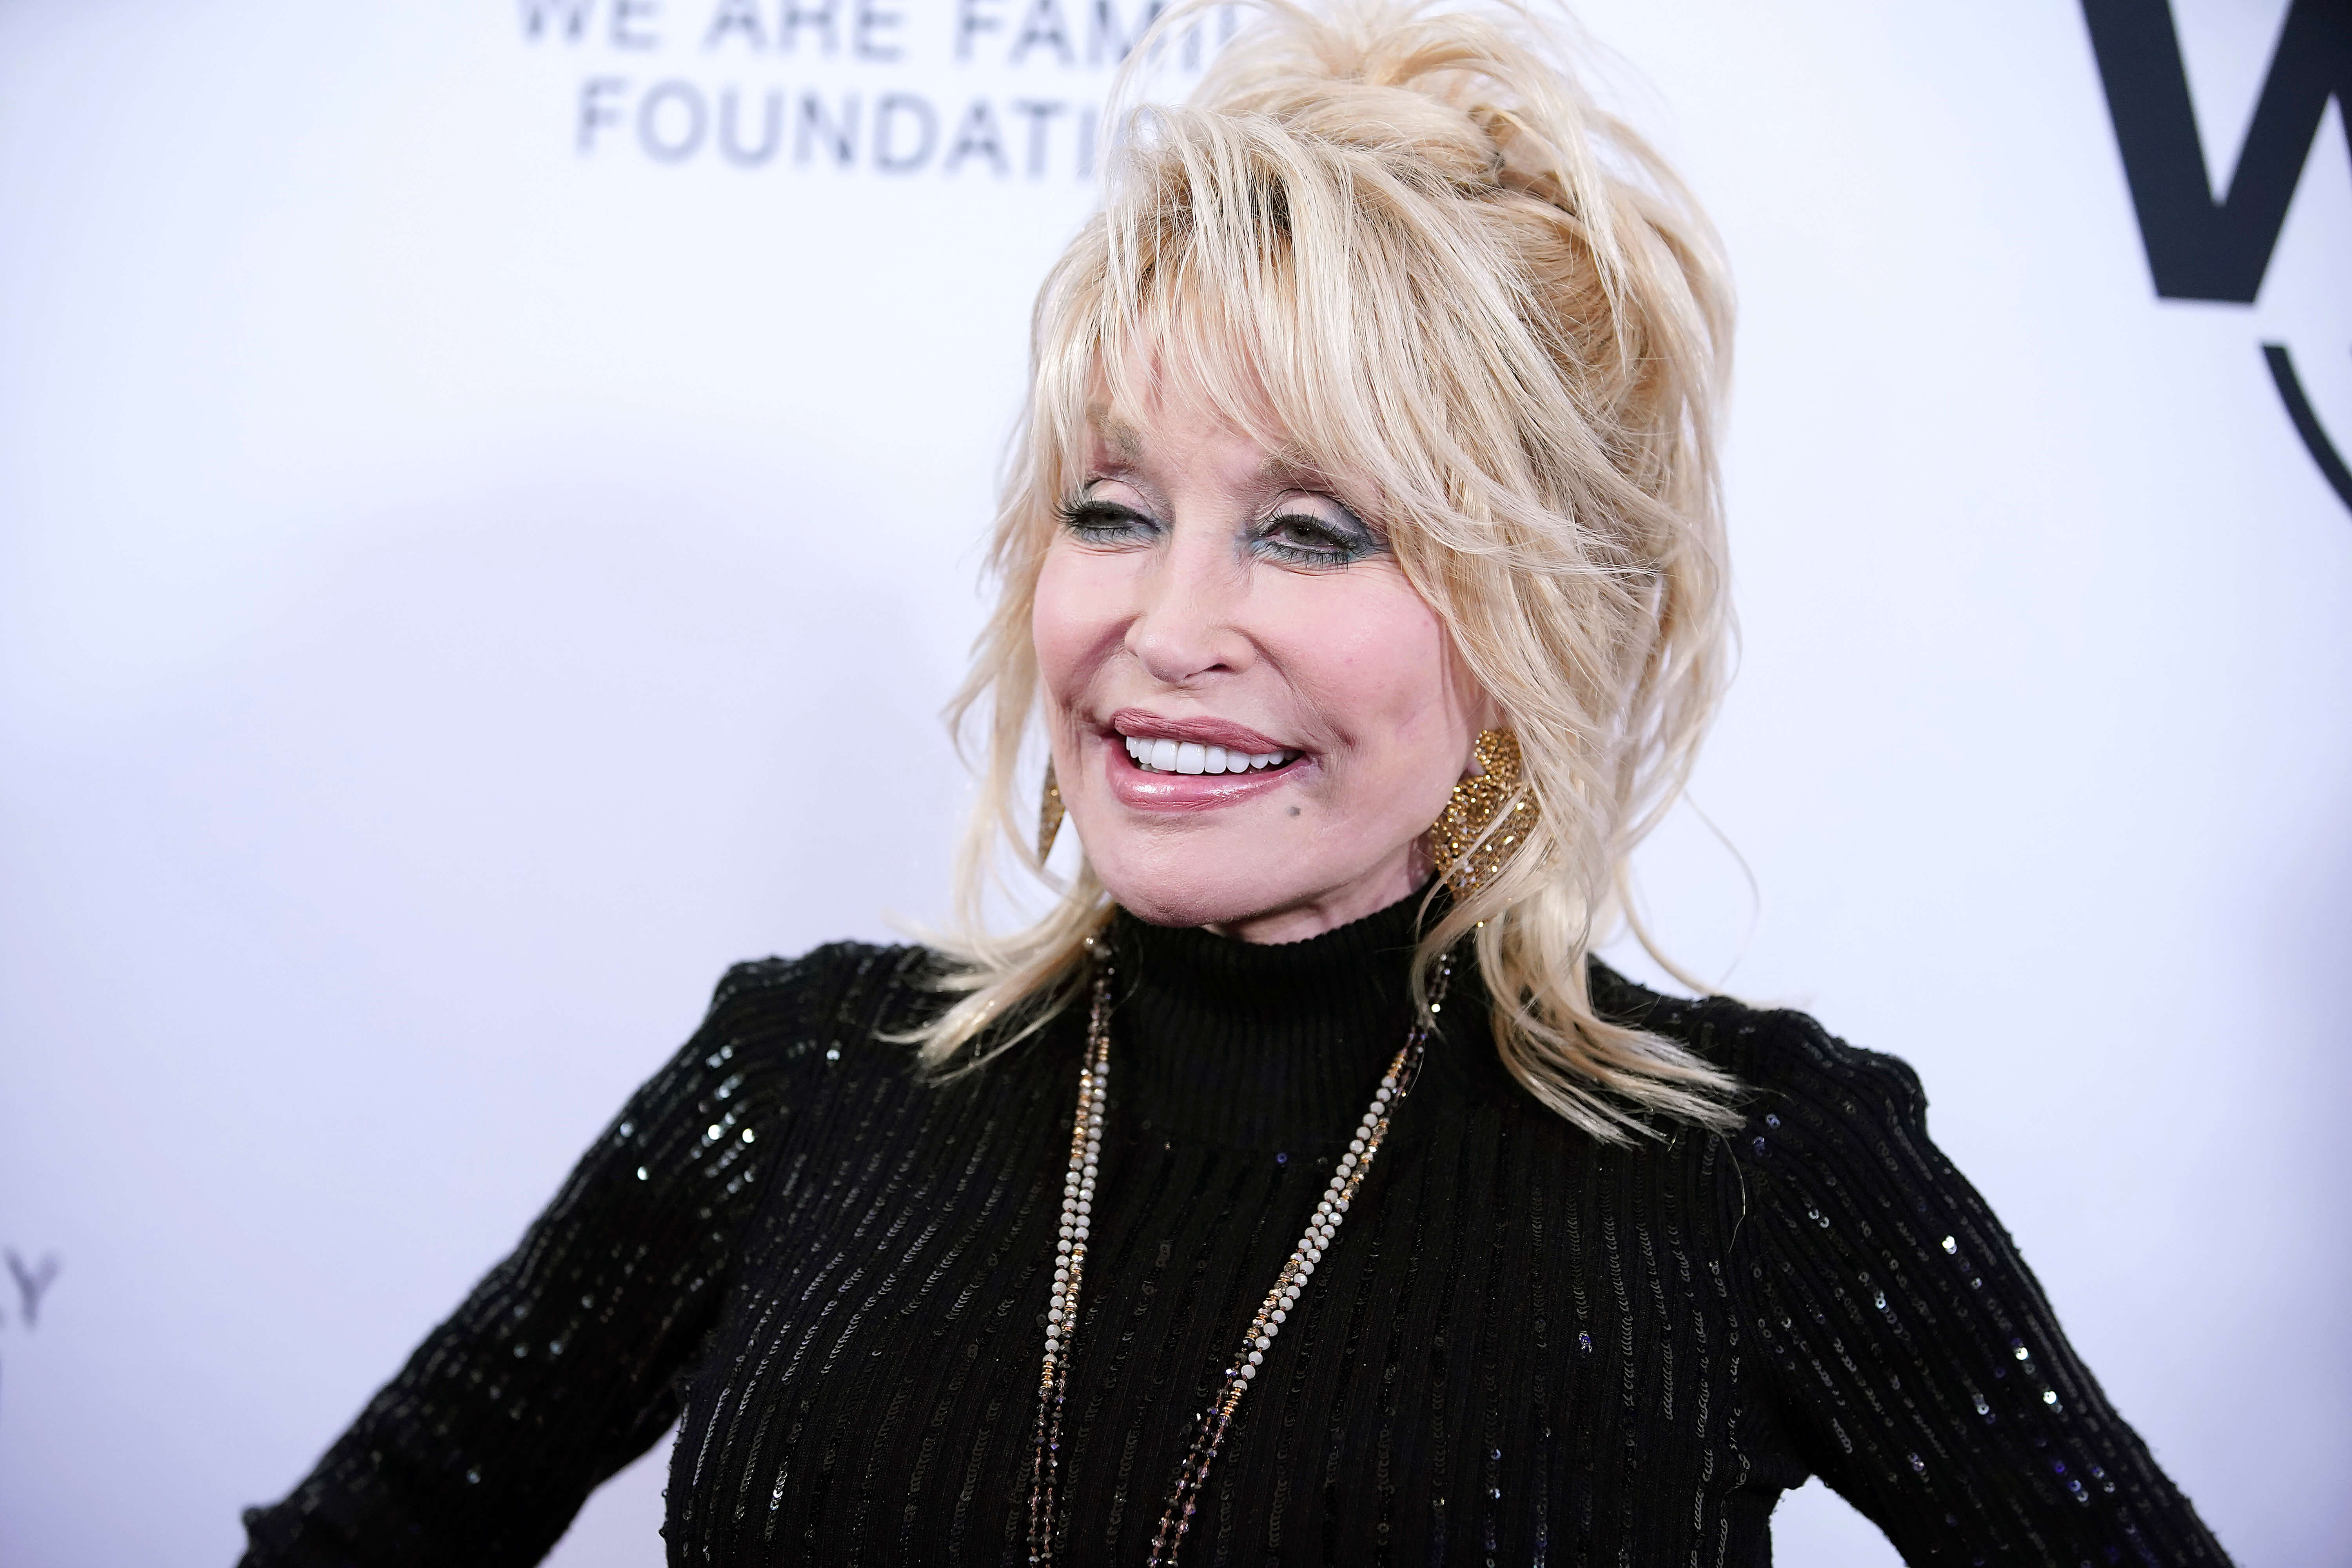 L'umile risposta di Dolly Parton alla vittoria di altri 3 Guinness World Records, portando il suo totale a 10